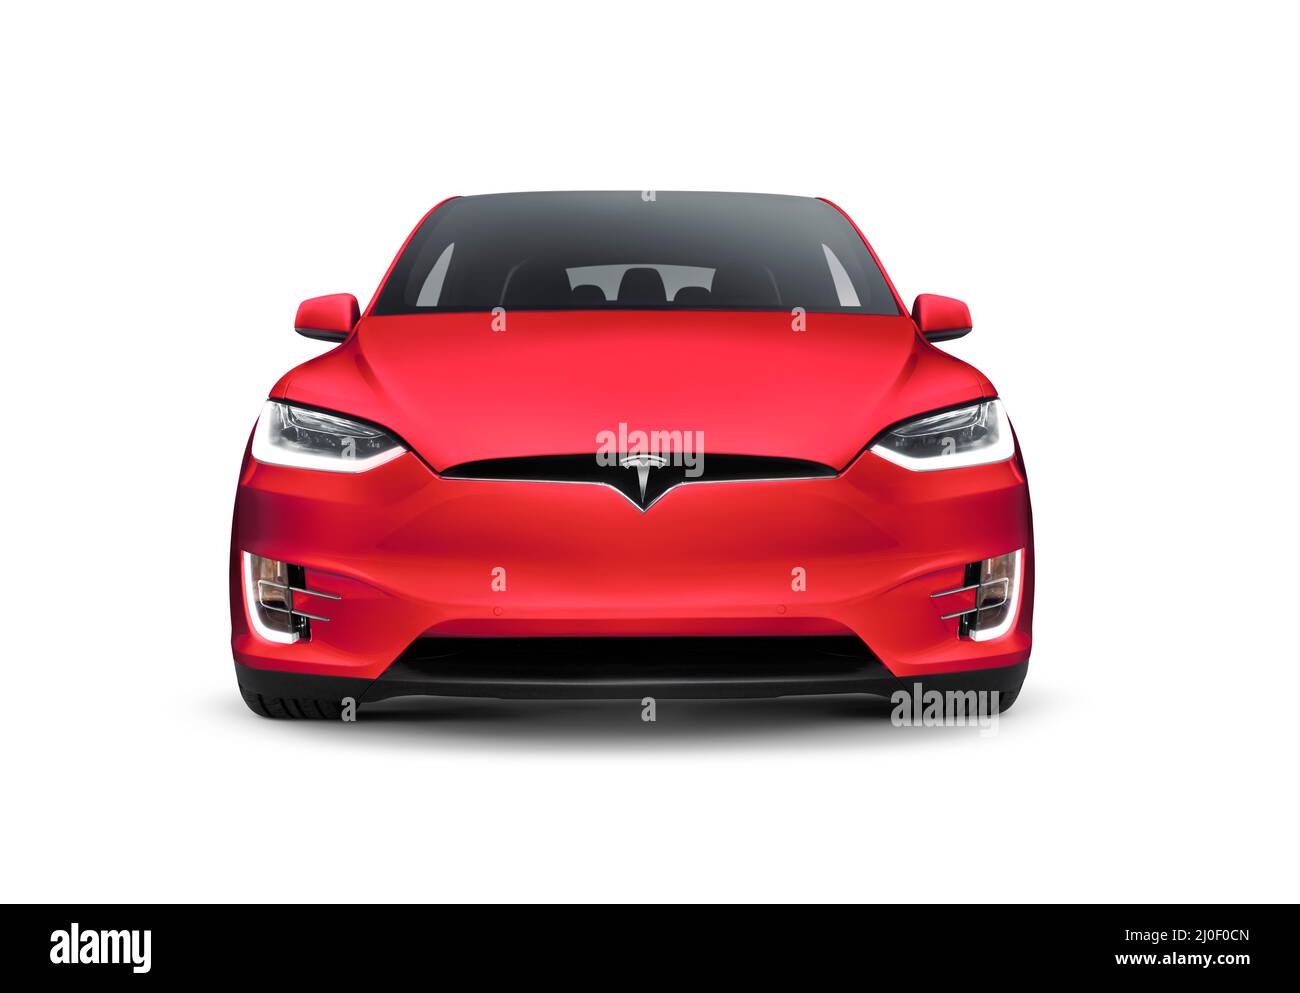 Licenza e stampe su MaximImages.com - auto elettrica di lusso Tesla, foto di stock automobilistico. Foto Stock